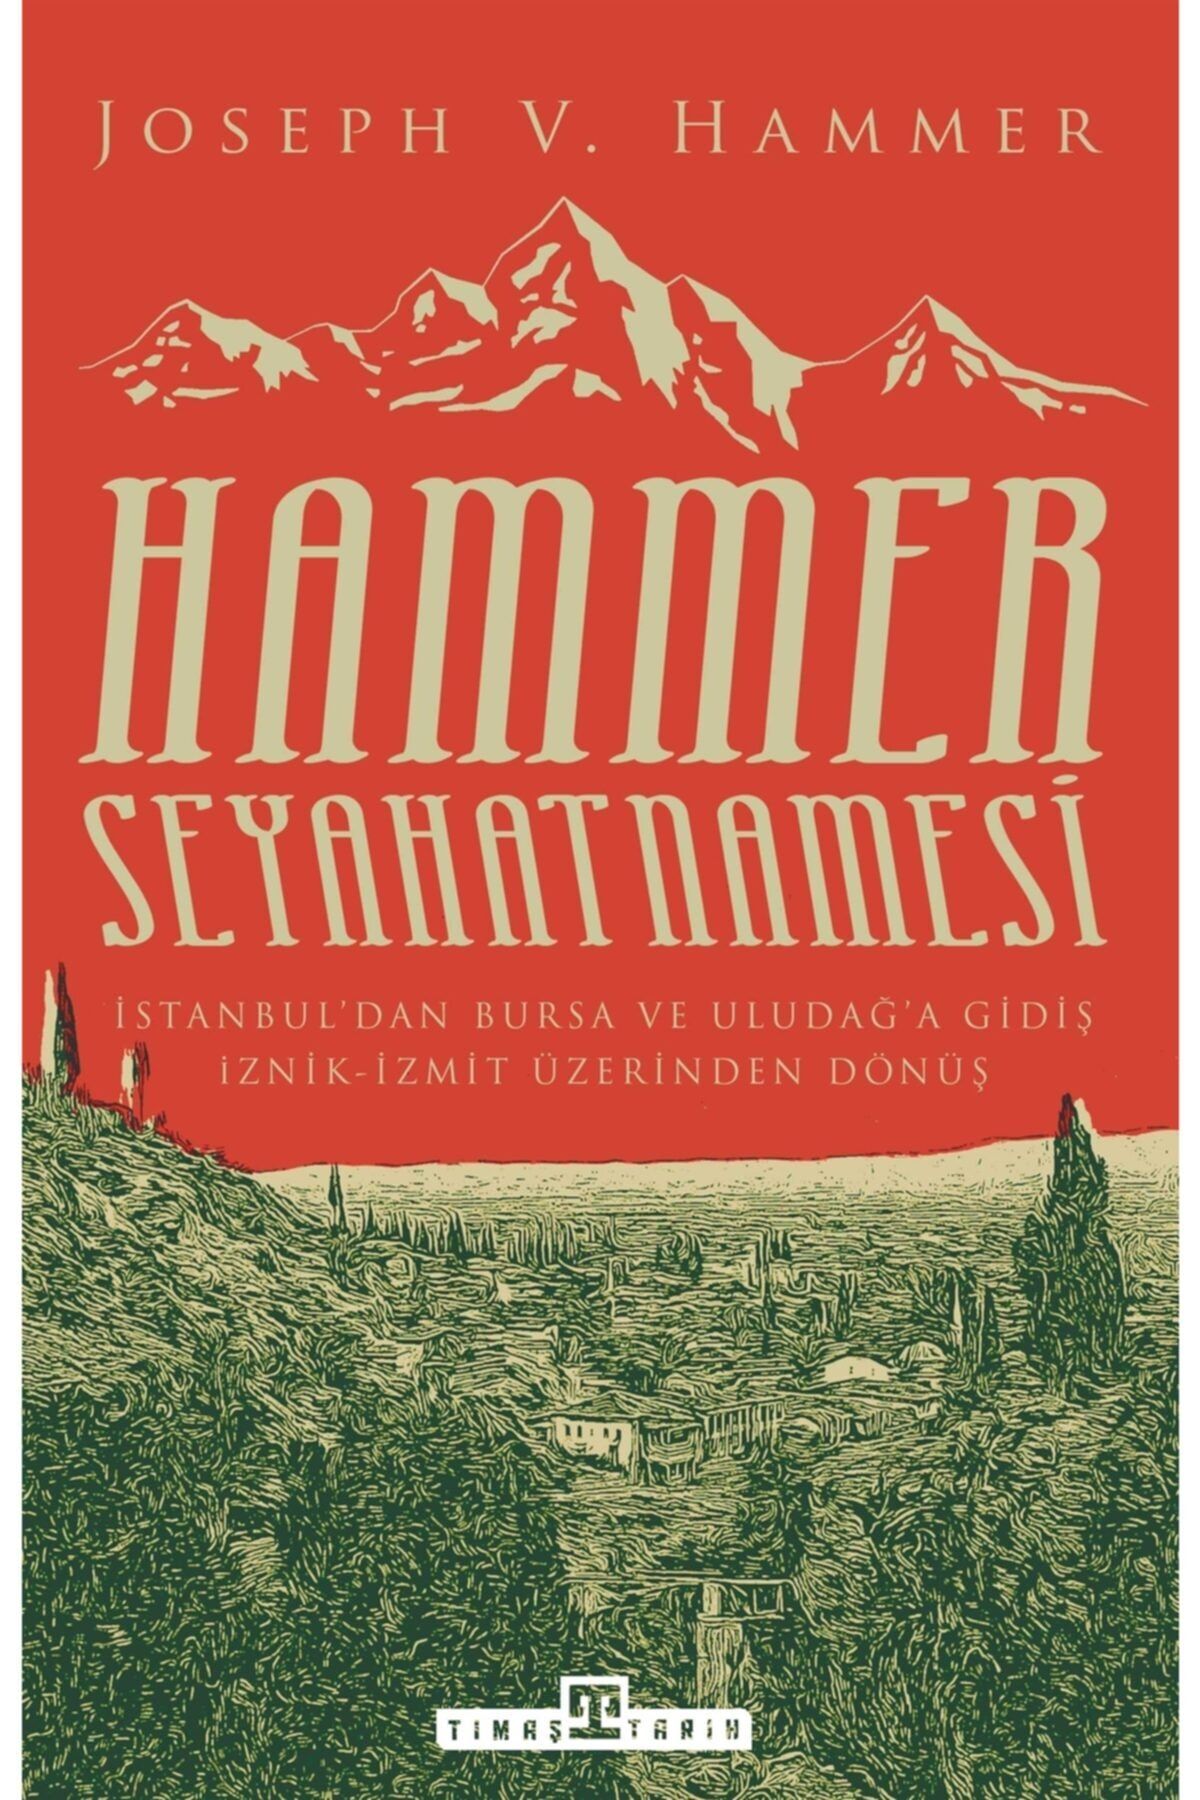 Timaş Yayınları Hammer Seyahatnamesi kitabı - Joseph Von Hammer - Timaş Yayınları